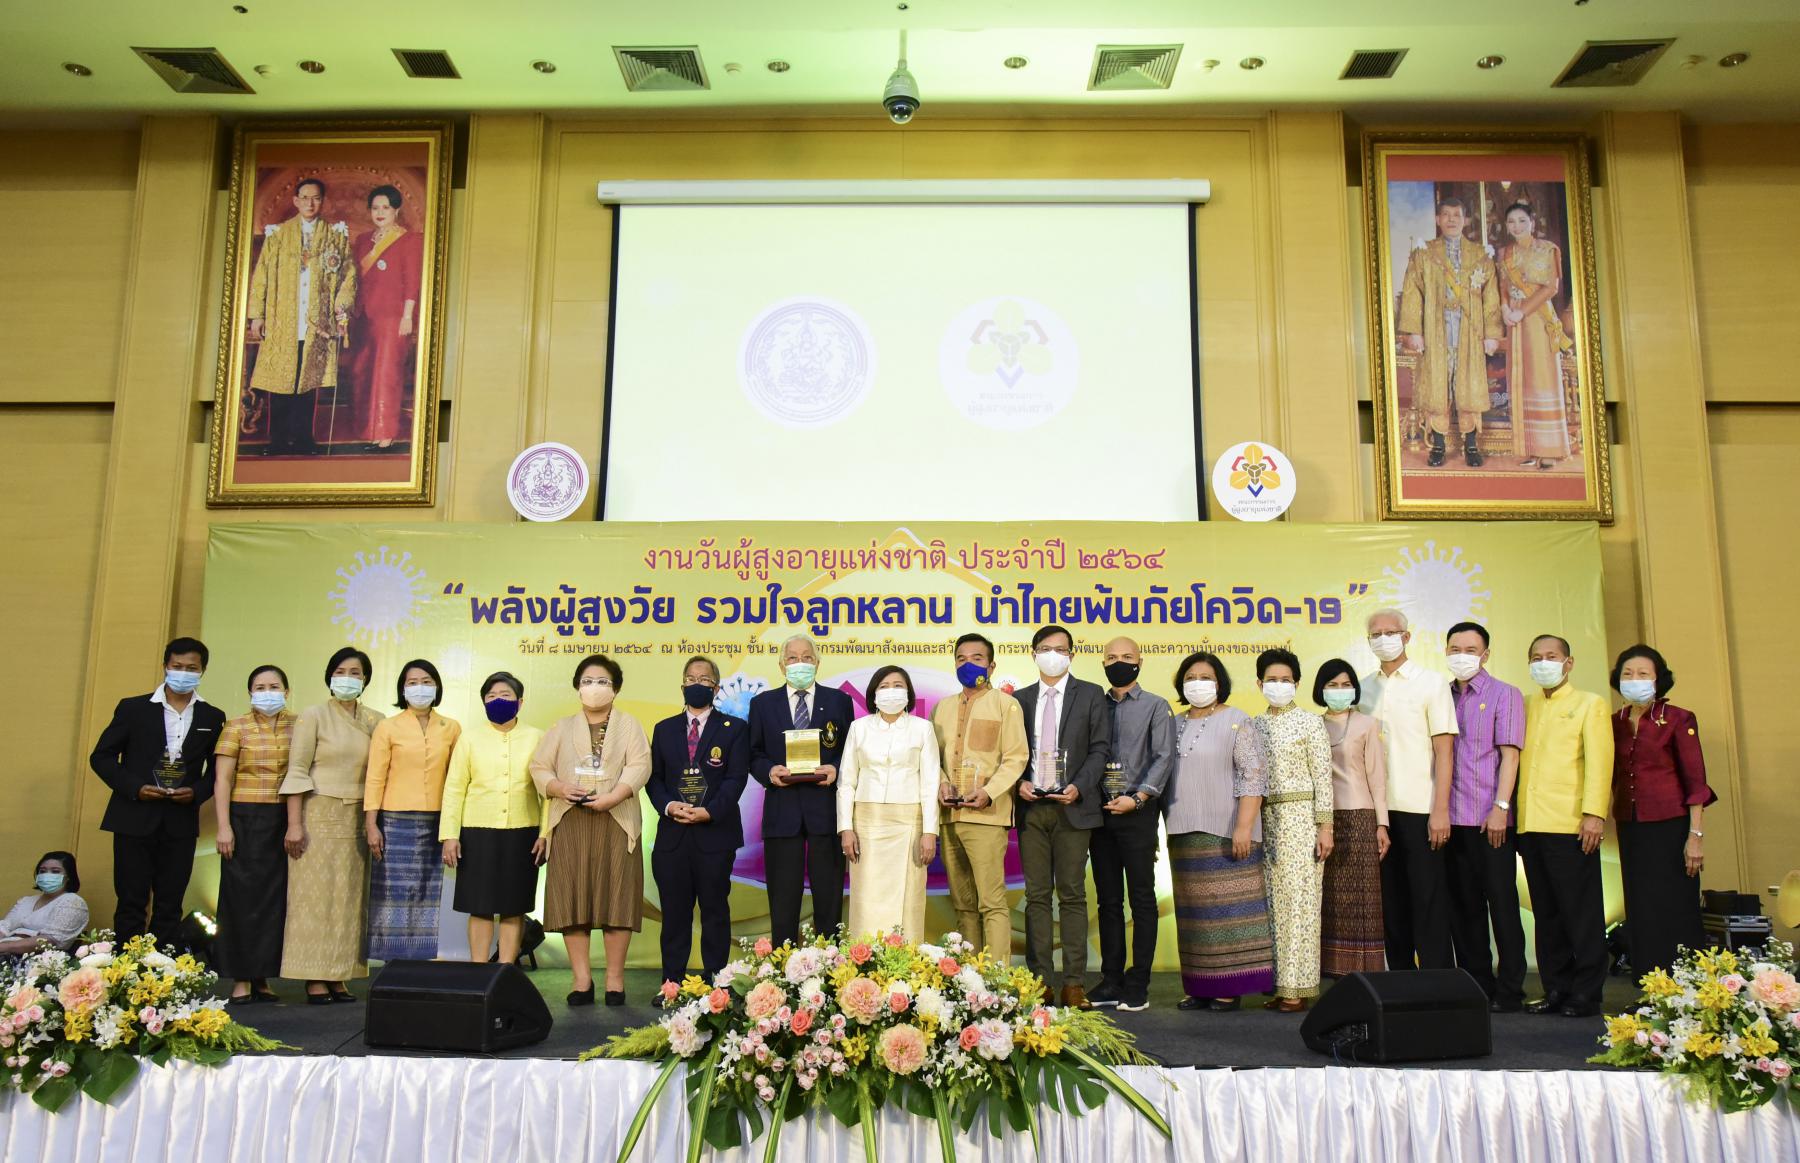 กระทรวง พม. โดย กรมกิจการผู้สูงอายุ จัดกิจกรรมวันผู้สูงอายุแห่งชาติ ประจำปี 2564 ภายใต้แนวคิด “พลังผู้สูงวัย รวมใจลูกหลาน นำไทยพ้นภัยโควิด-19”